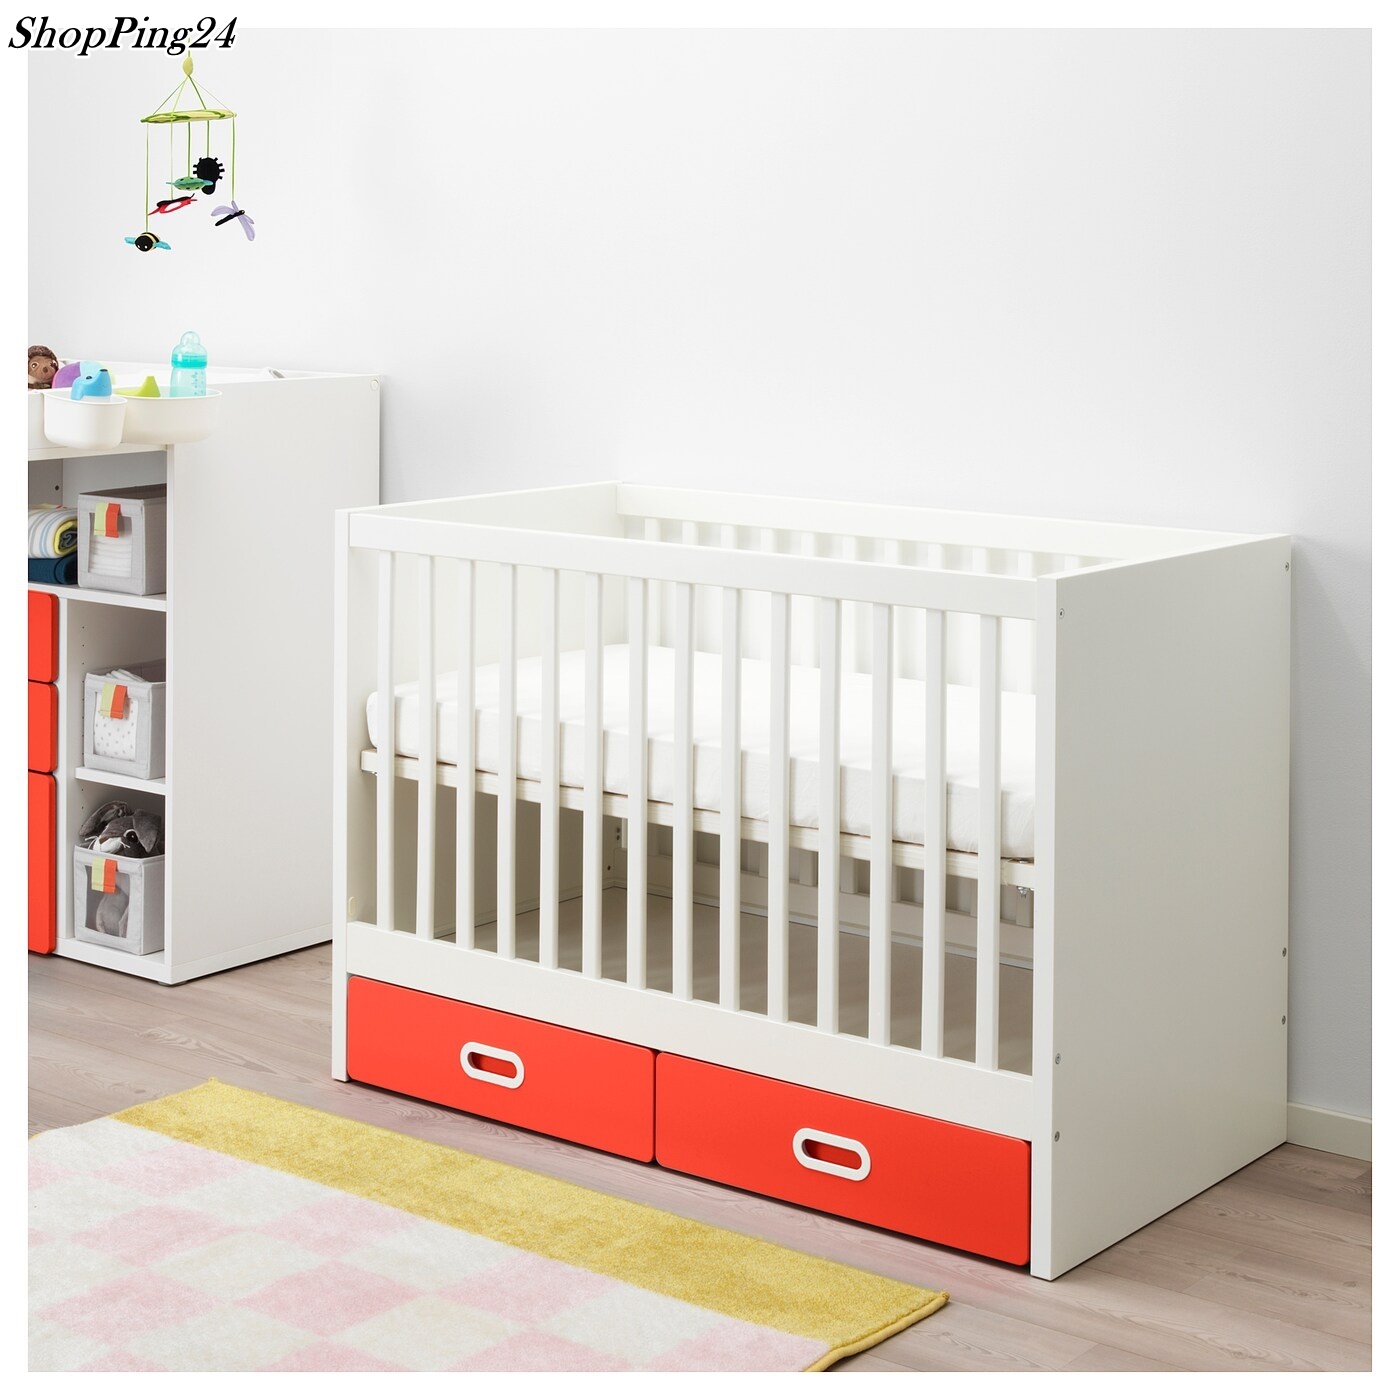 เตียงเด็กอ่อน Baby Cot  เตียงเด็กอ่อนพร้อมลิ้นชัก Baby Bed  Baby Cot with drawers STAVAT  60 X 120 Cm